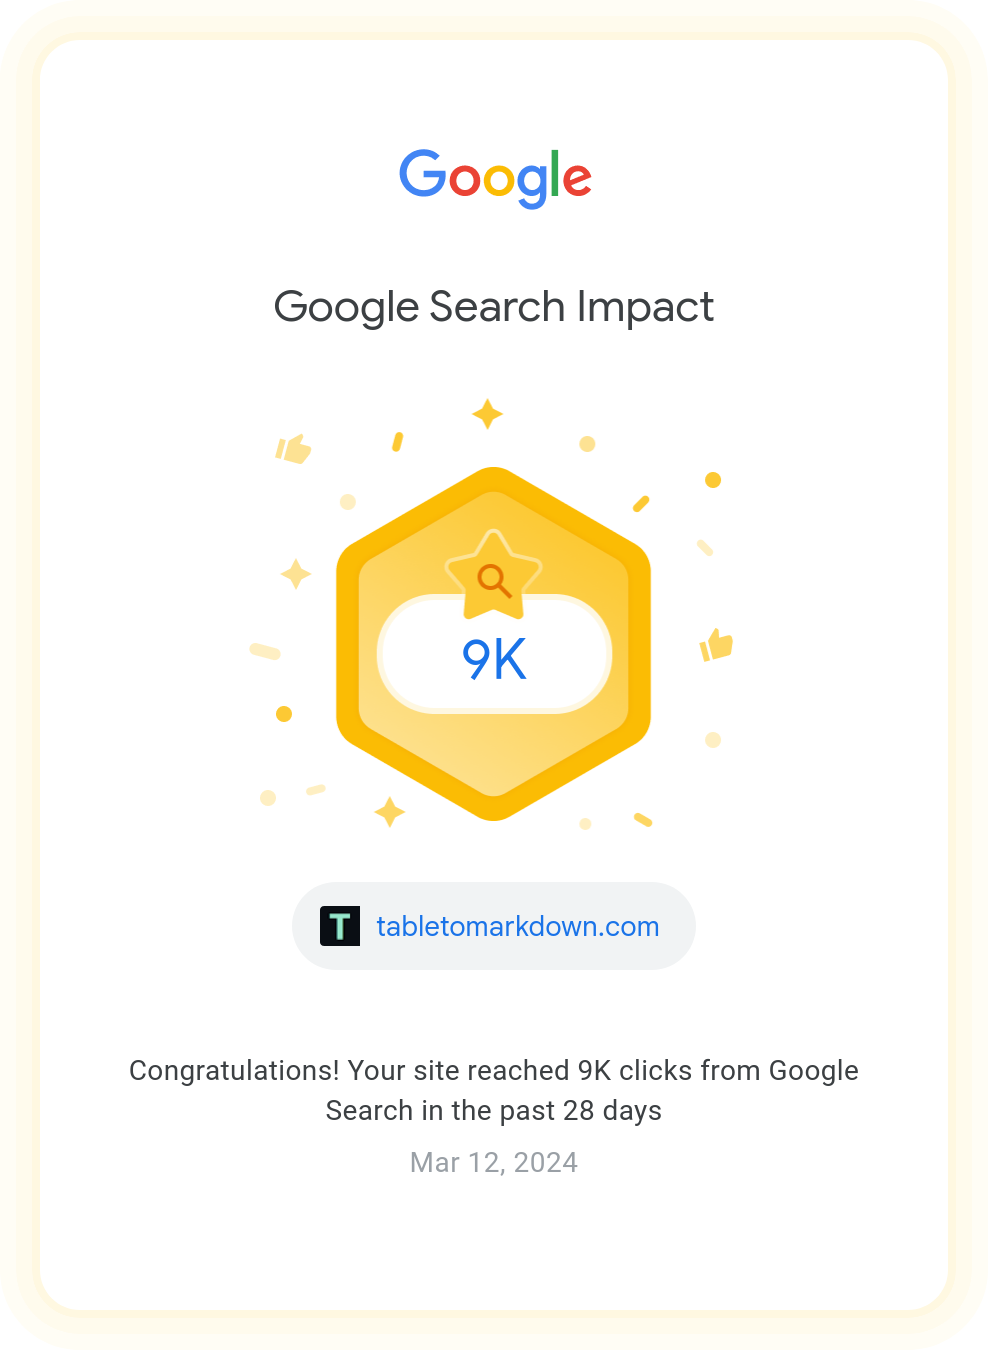  9k Google clicks in 28 days!